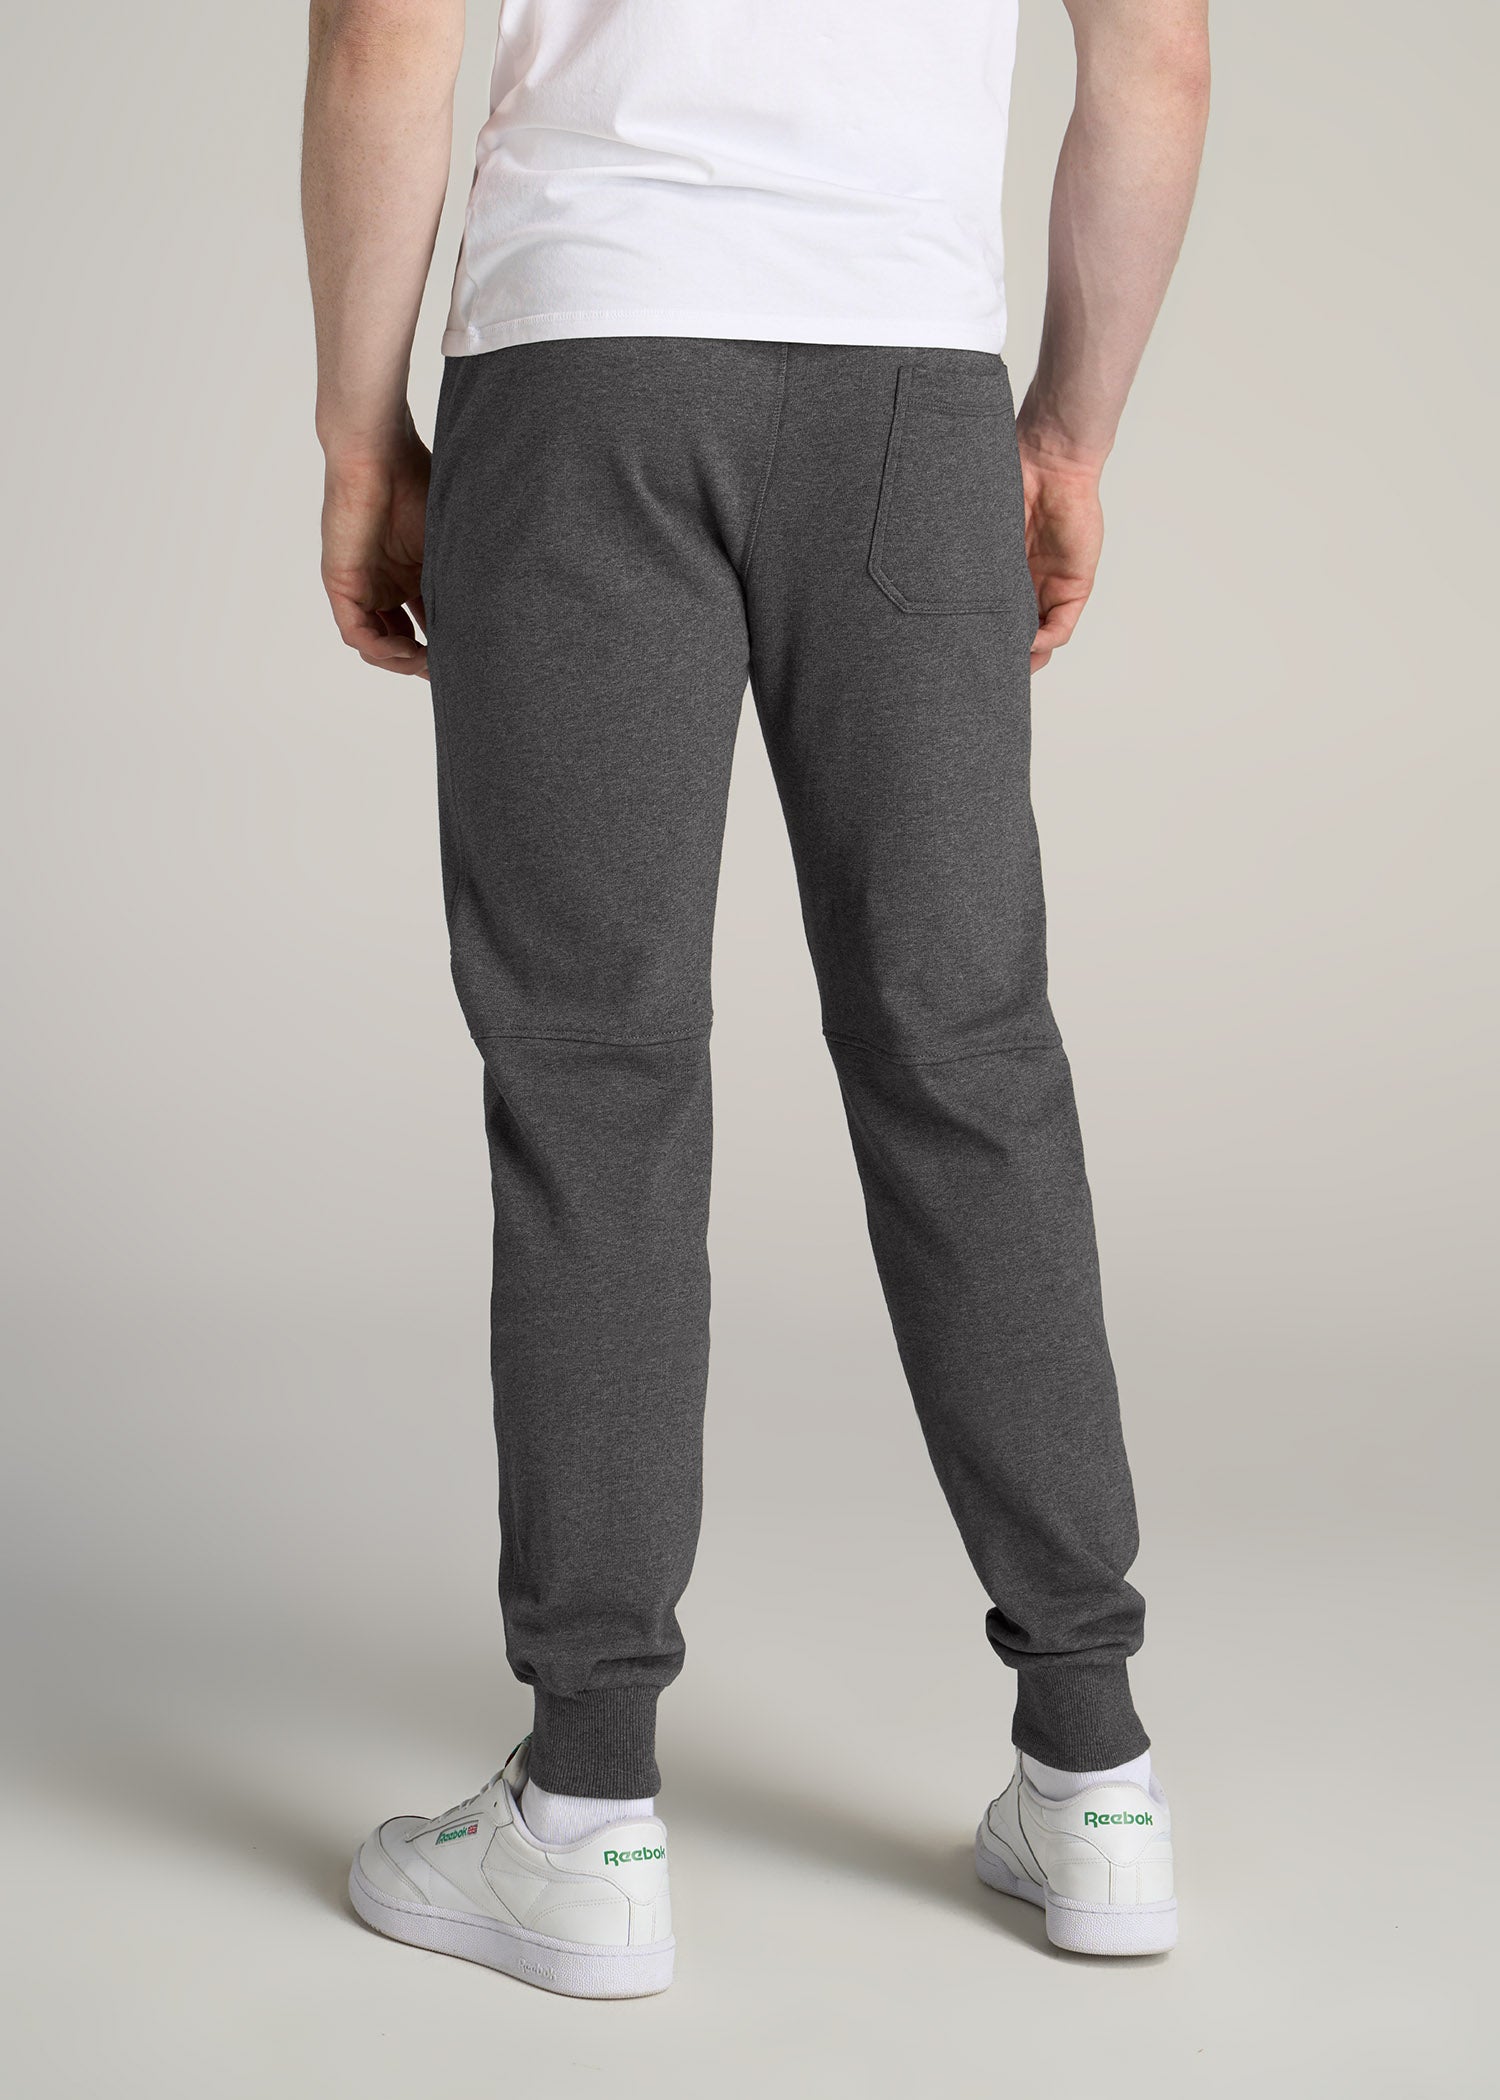 Lululemon Intent Jogger Pants - Men's Size M- Gray